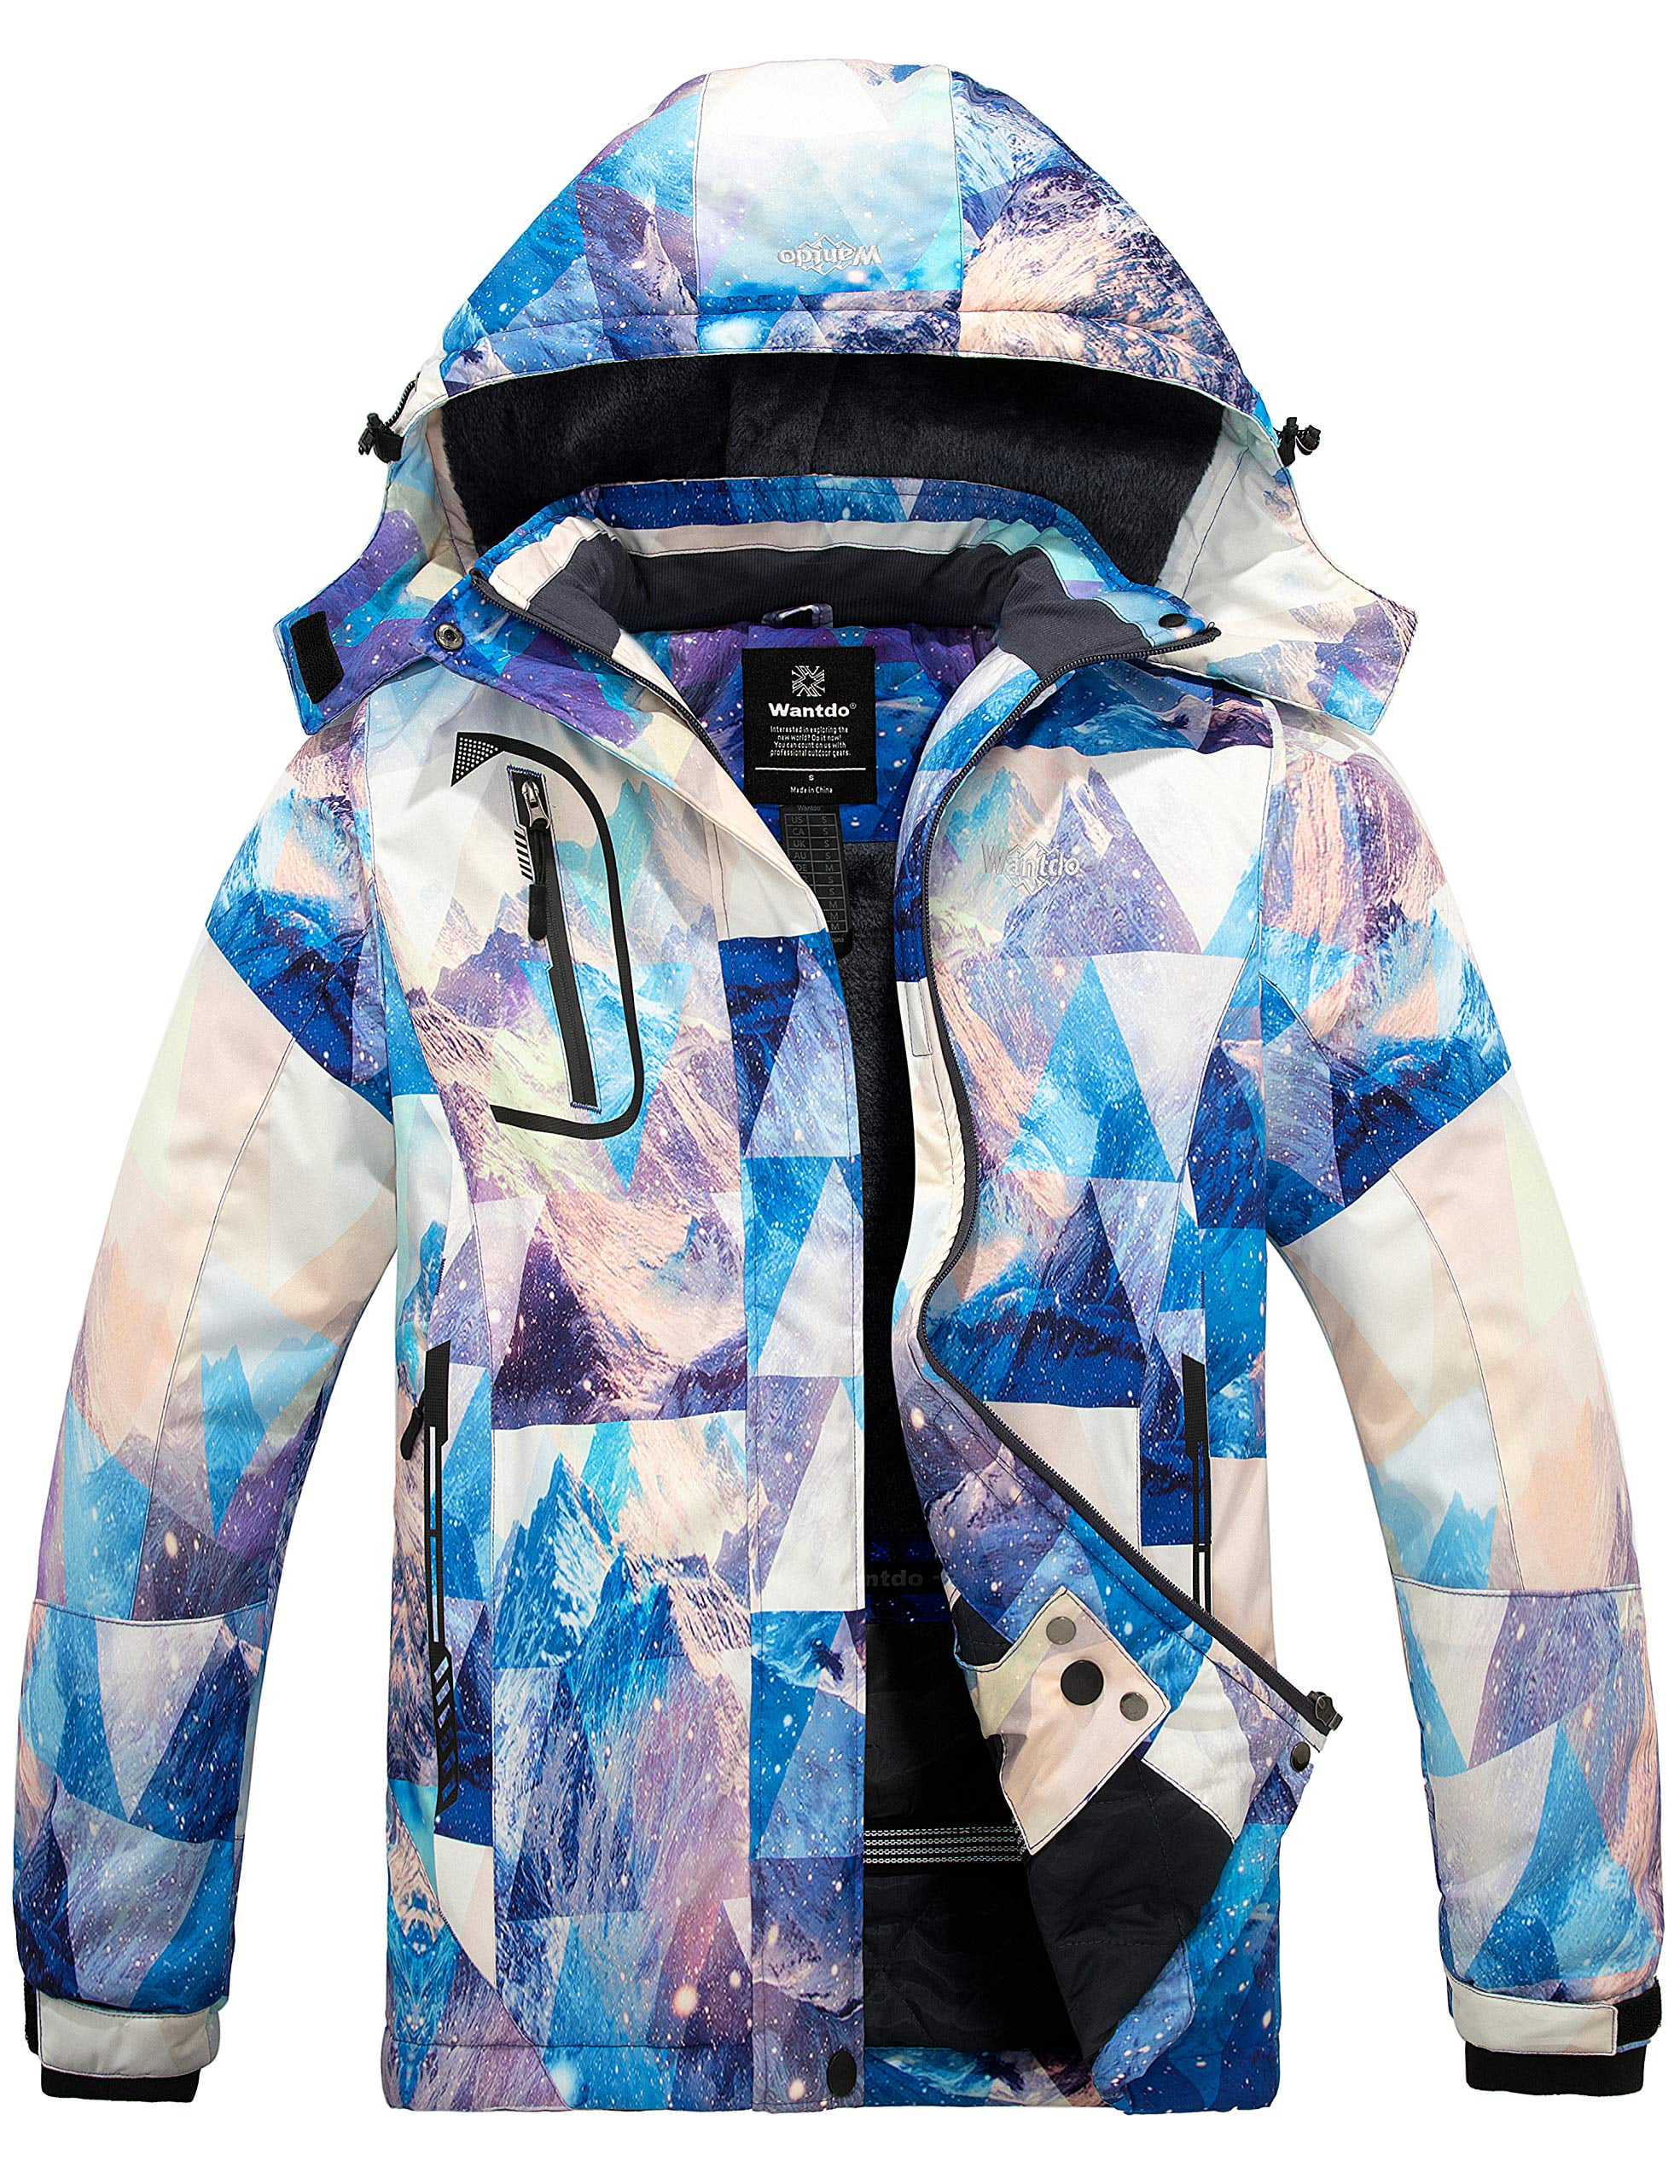 Wantdo Women's Warm Windproof Coat Mountain Ski Jacket Waterproof Windbreaker Winter Coat Hooded Snow Jacket 